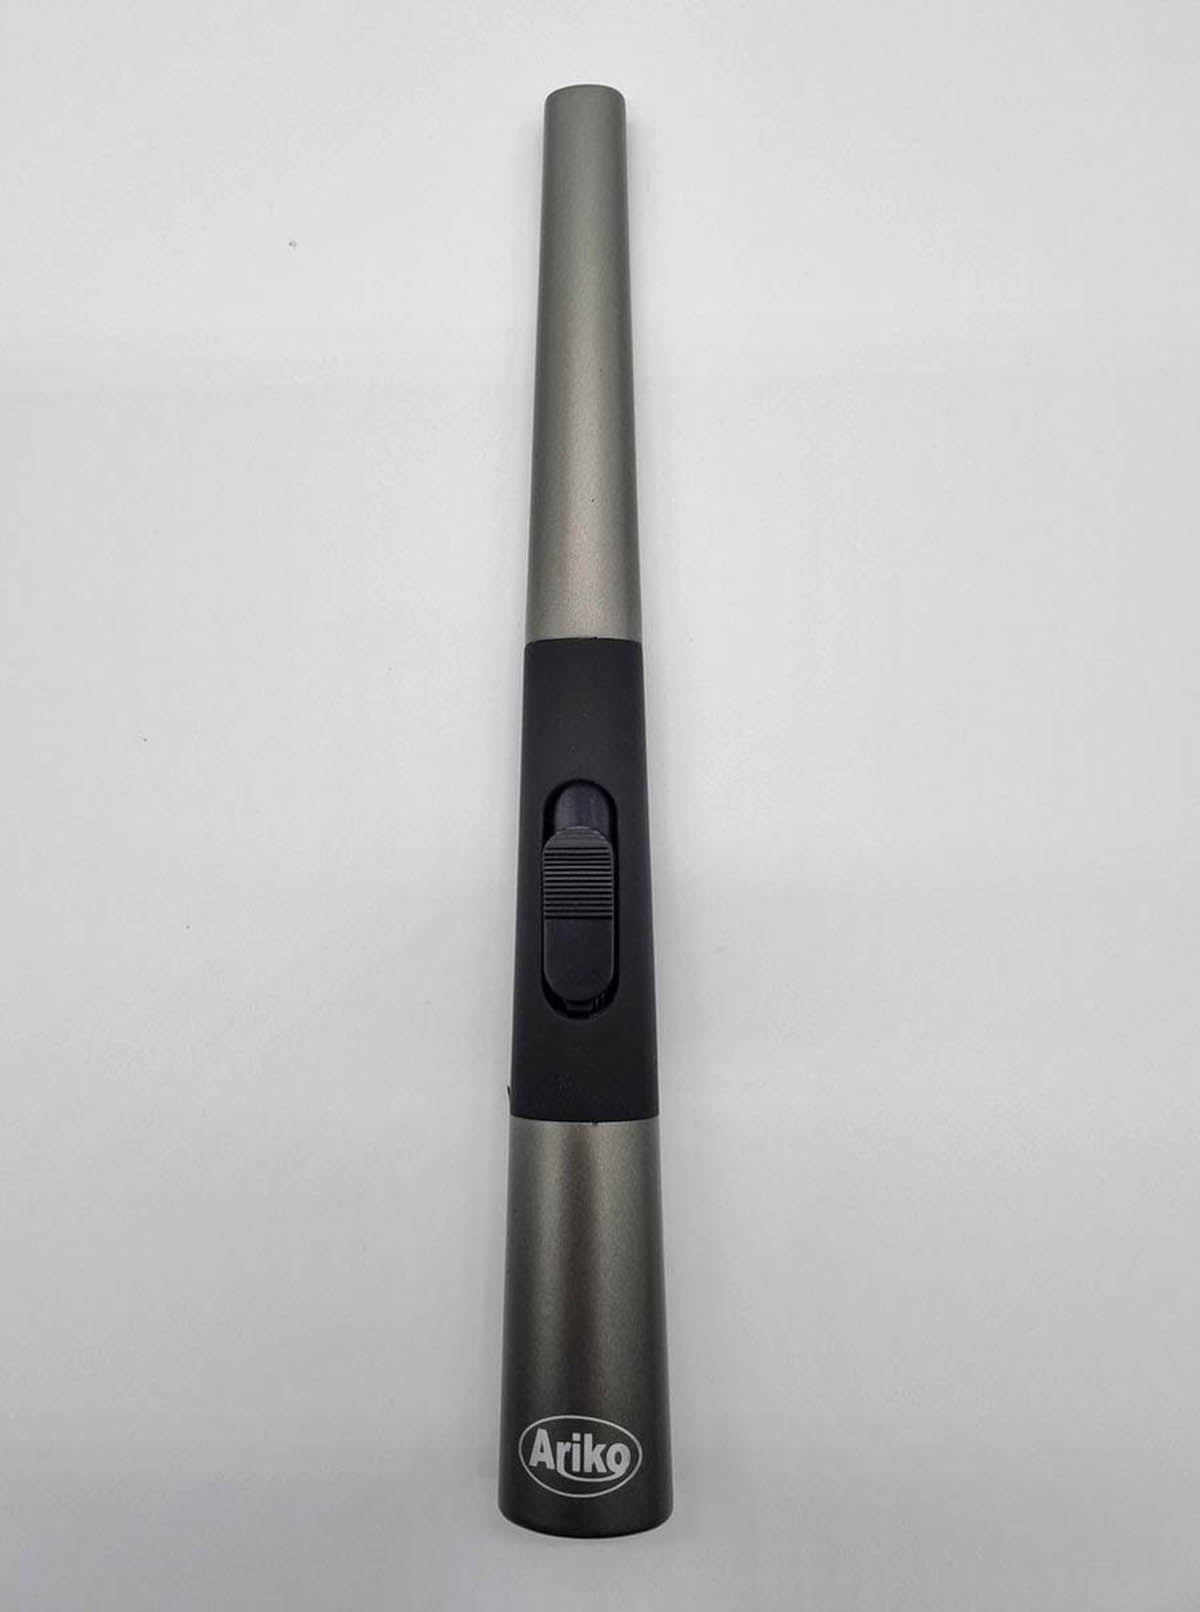 Ariko Luxuriöses Plasma-Feuerzeug (Schwarz) in Geschenkbox|USB wiederaufladbar| Flammenloses elektrisches Feuerzeug für Küche, Kerze, Grill oder Kamin| Innen und außen | Schickes Design